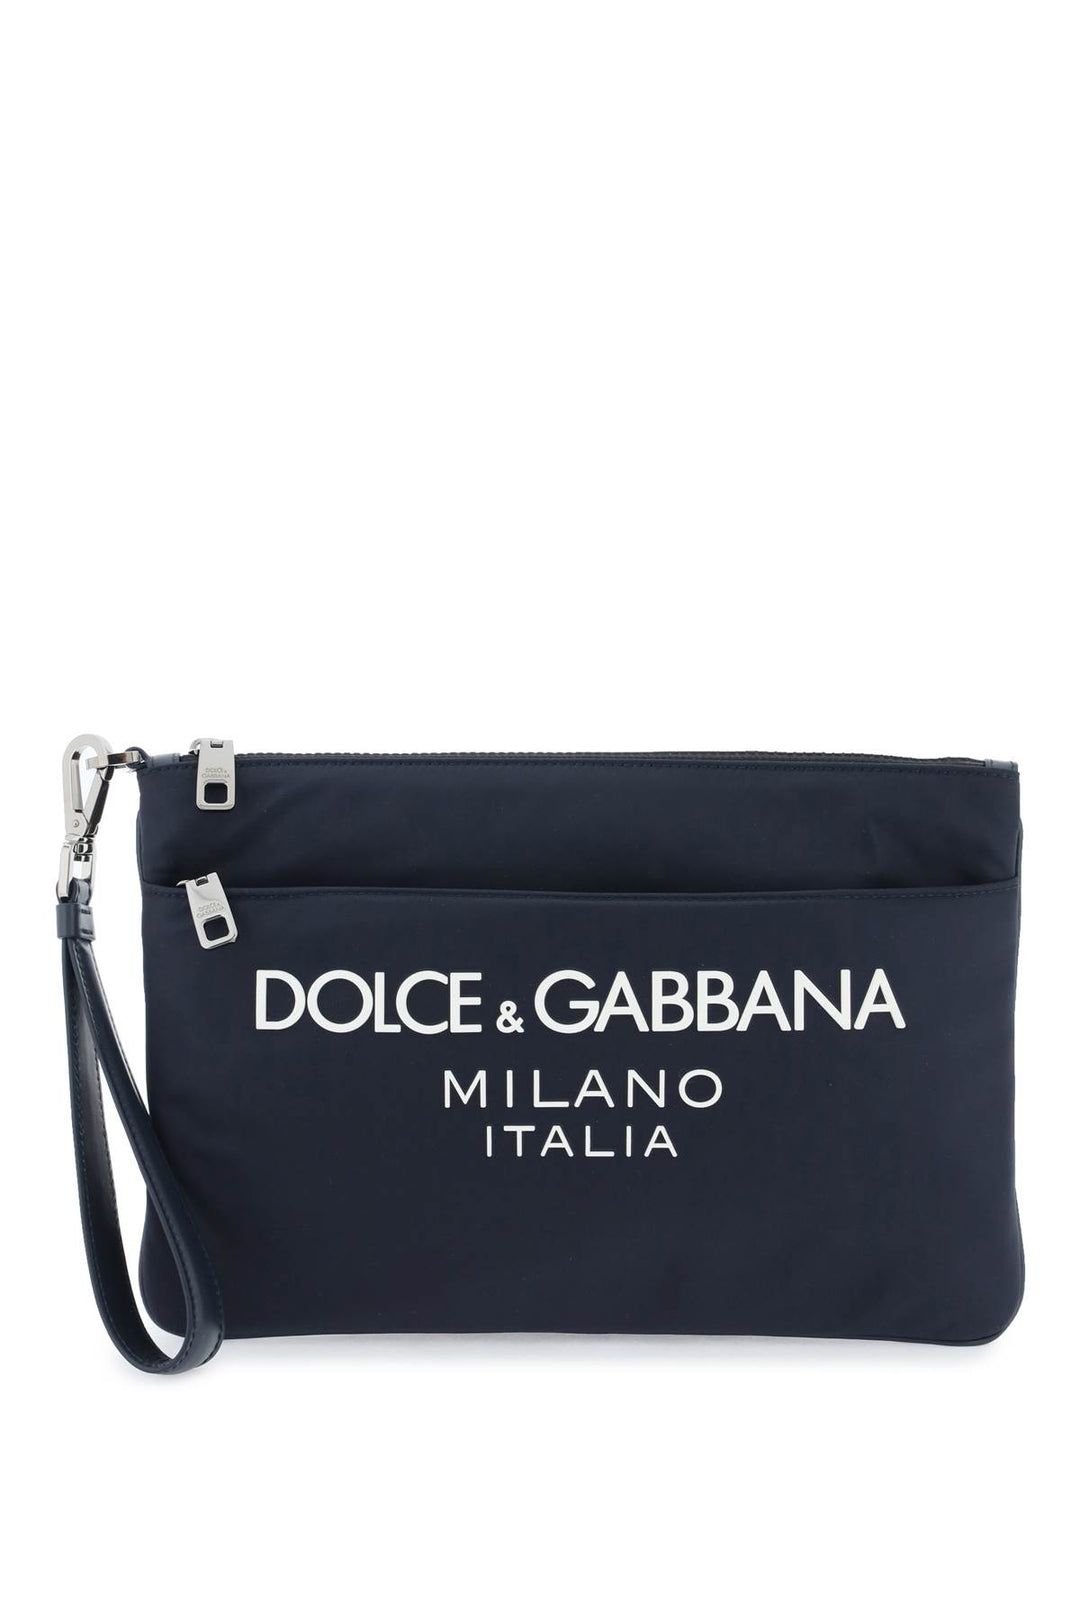 Dolce & Gabbana Nylon Pouch With Rubberized Logo   Blu